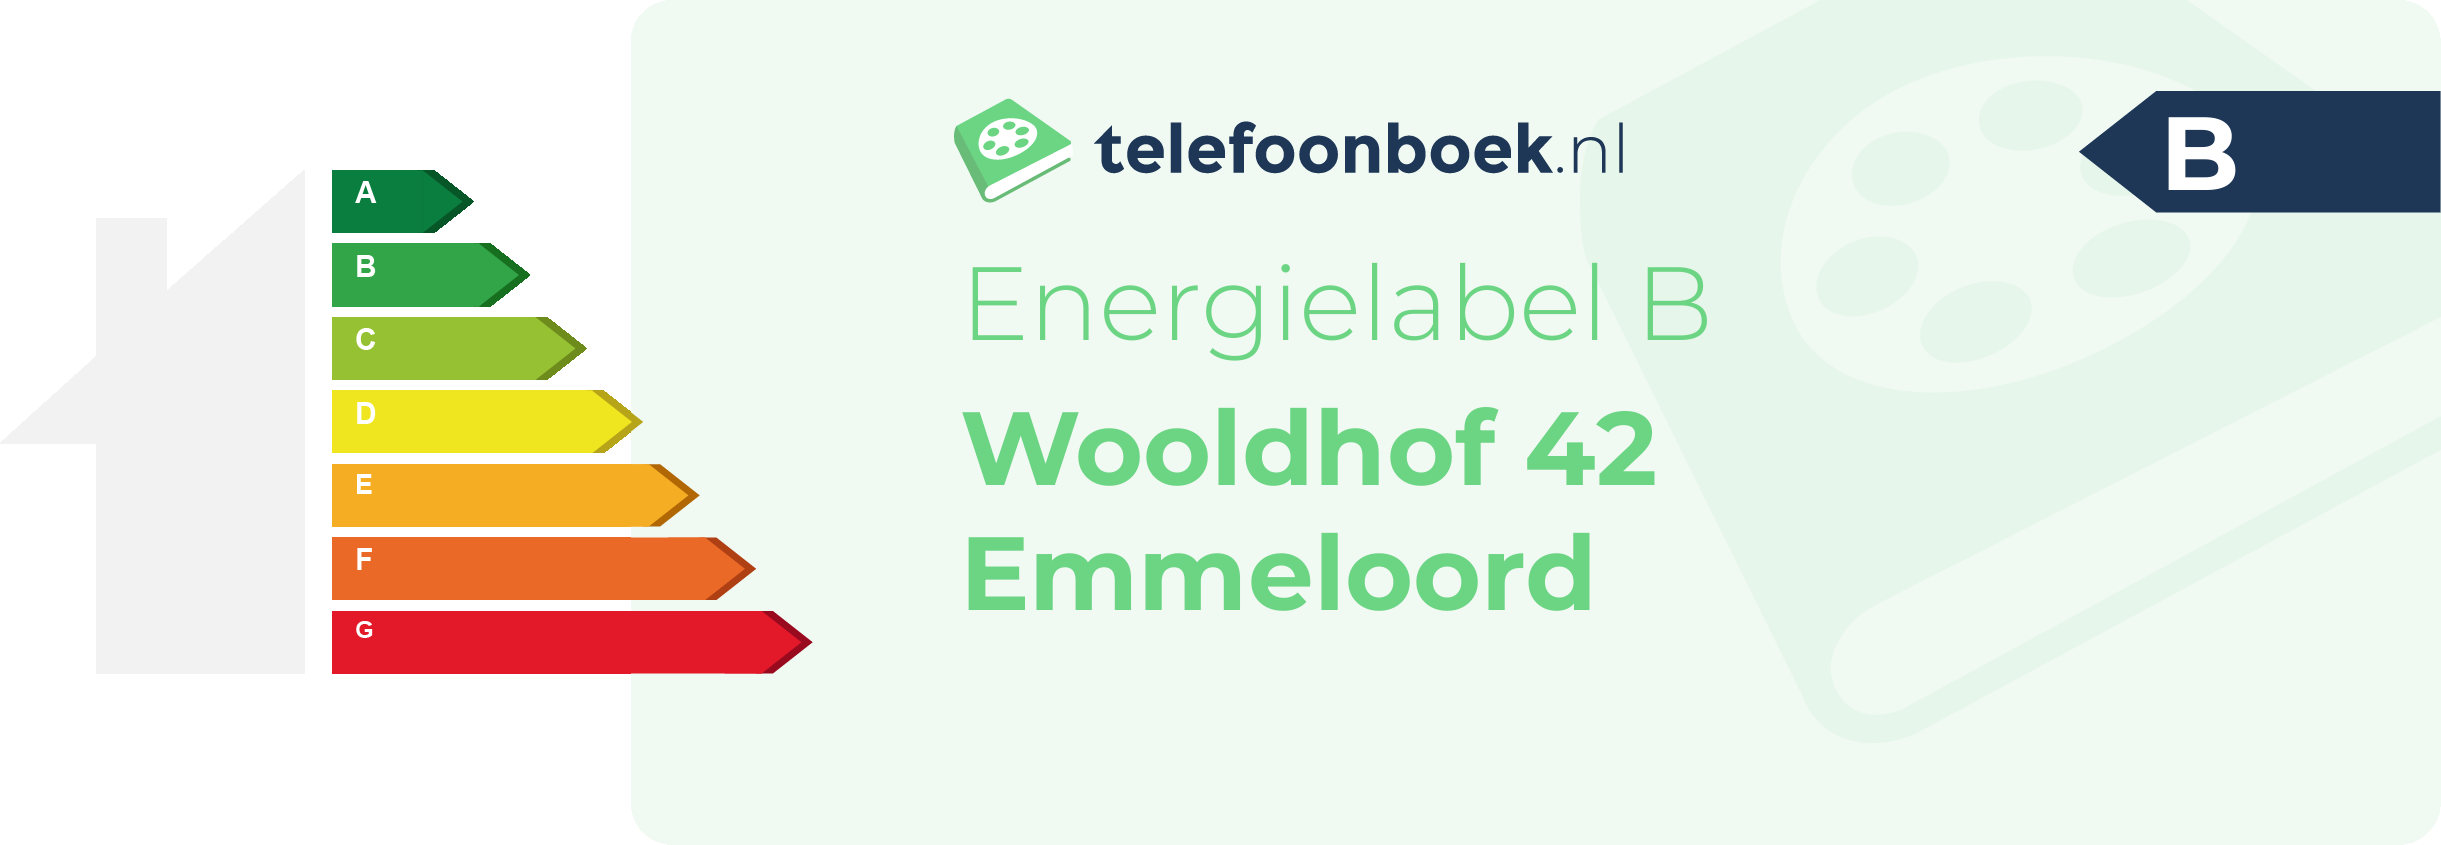 Energielabel Wooldhof 42 Emmeloord